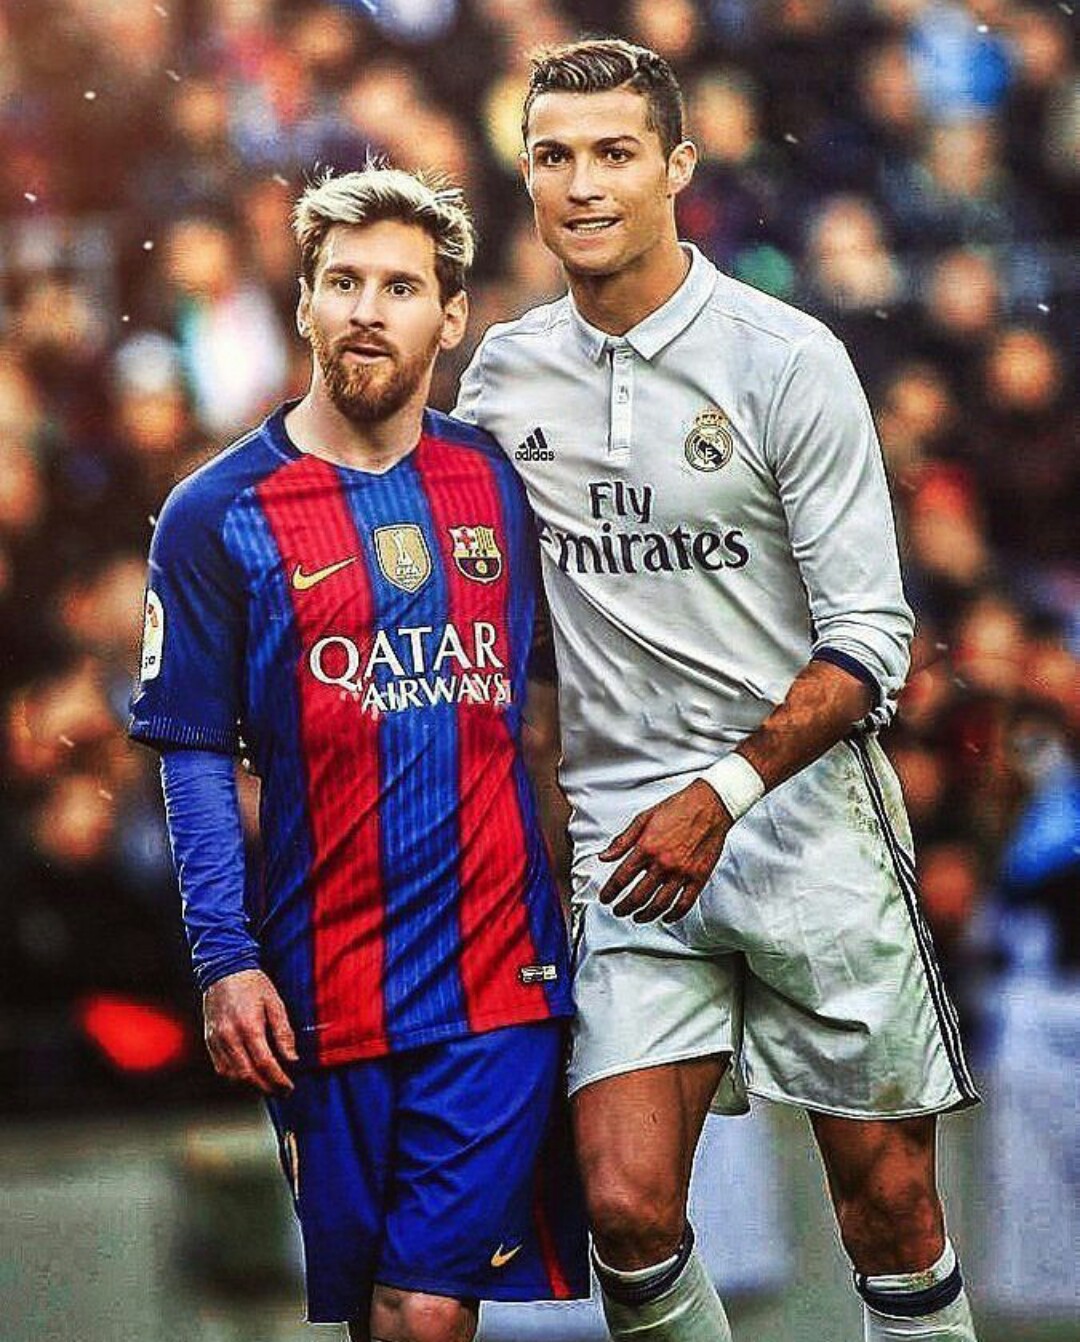 Cristiano Ronaldo và Lionel Messi - hai cái tên sáng giá của bóng đá thế giới trong những năm qua. Những hình ảnh Ronaldo và Messi sẽ giúp bạn hiểu rõ hơn về sự sống còn và những pha bóng kỹ thuật đẳng cấp mà hai ngôi sao này đã thể hiện. Đừng bỏ lỡ cơ hội thưởng thức những hình ảnh này!